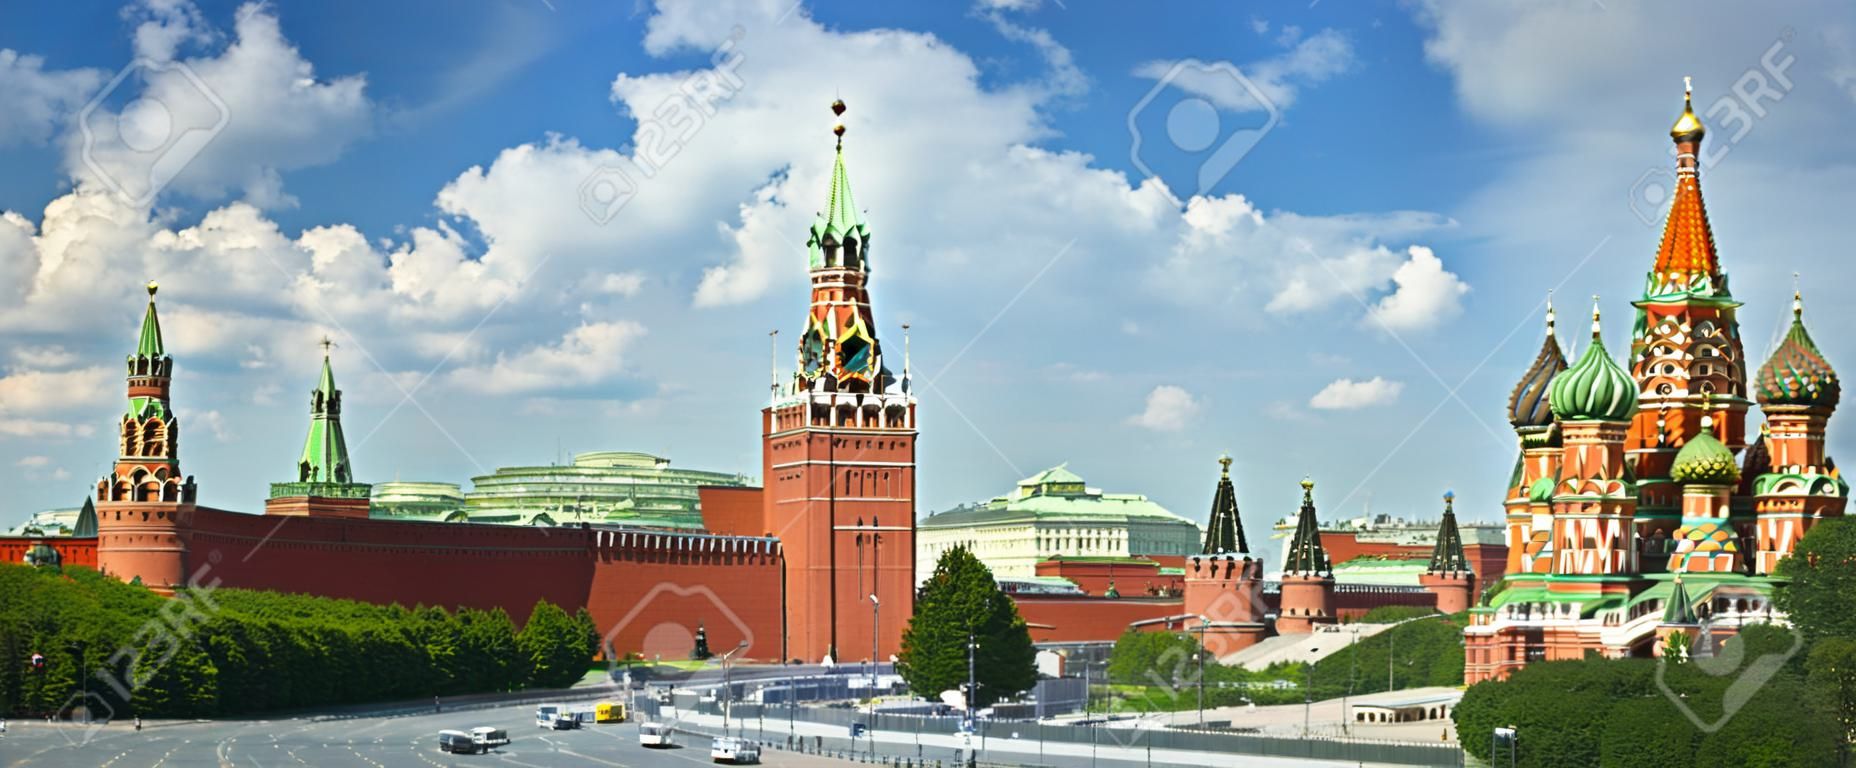 Panorámás kilátás Moszkva vörös térről, Kreml tornyokról, csillagokról és Kuranti óra, Szent Bazil székesegyház. Panoráma szálloda Oroszországból. Moszkva üdülési túrák híres látnivalók